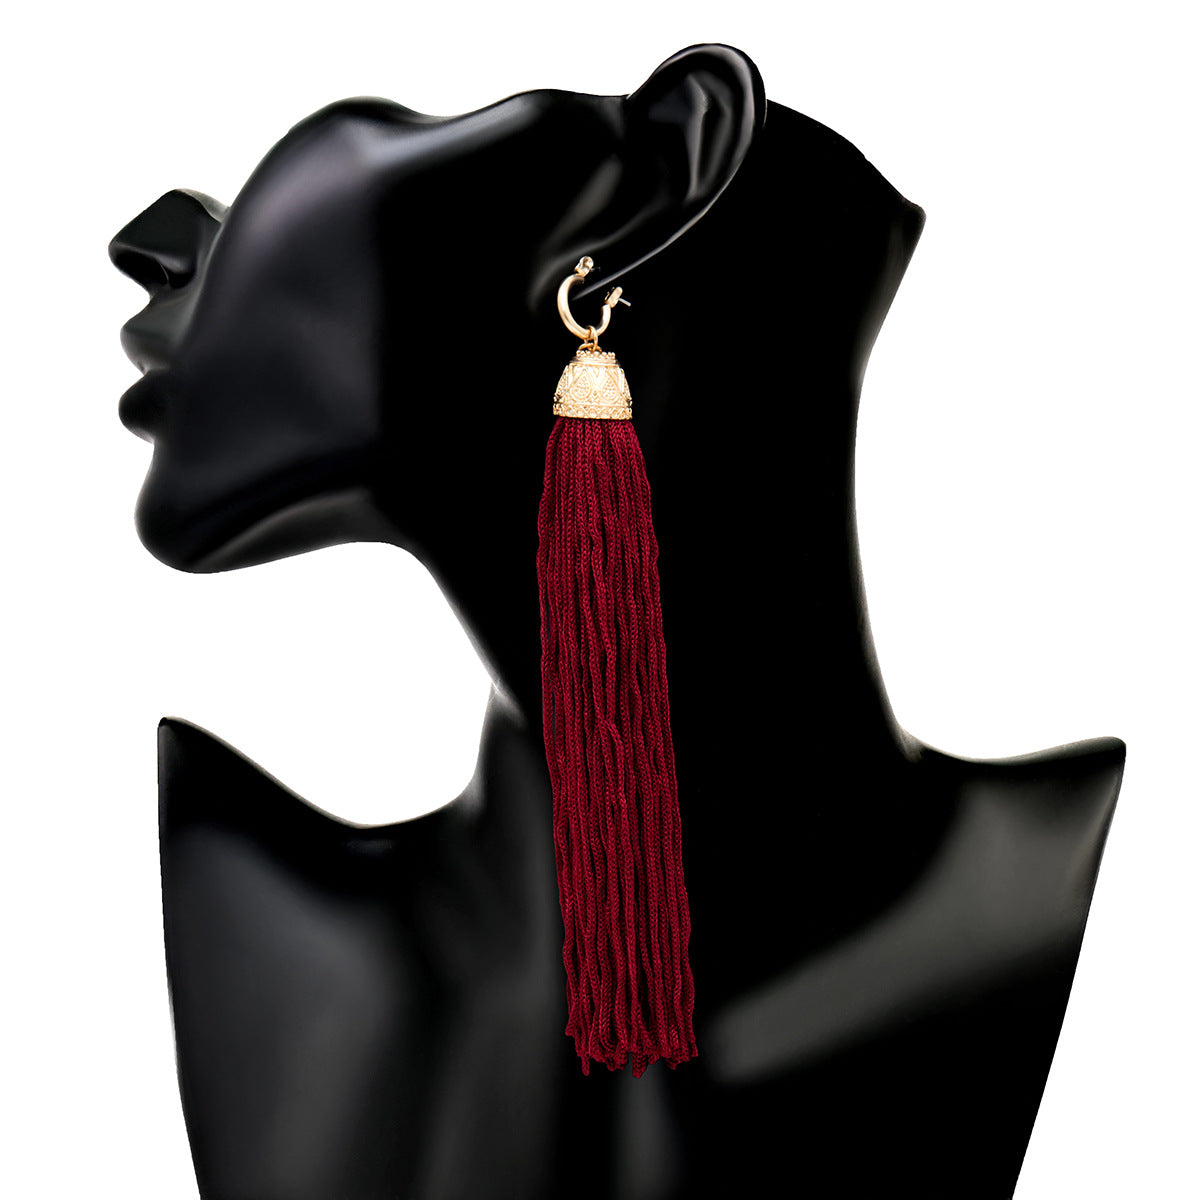 Stylish Linear Tassel Earrings for Women in Retro Long Design